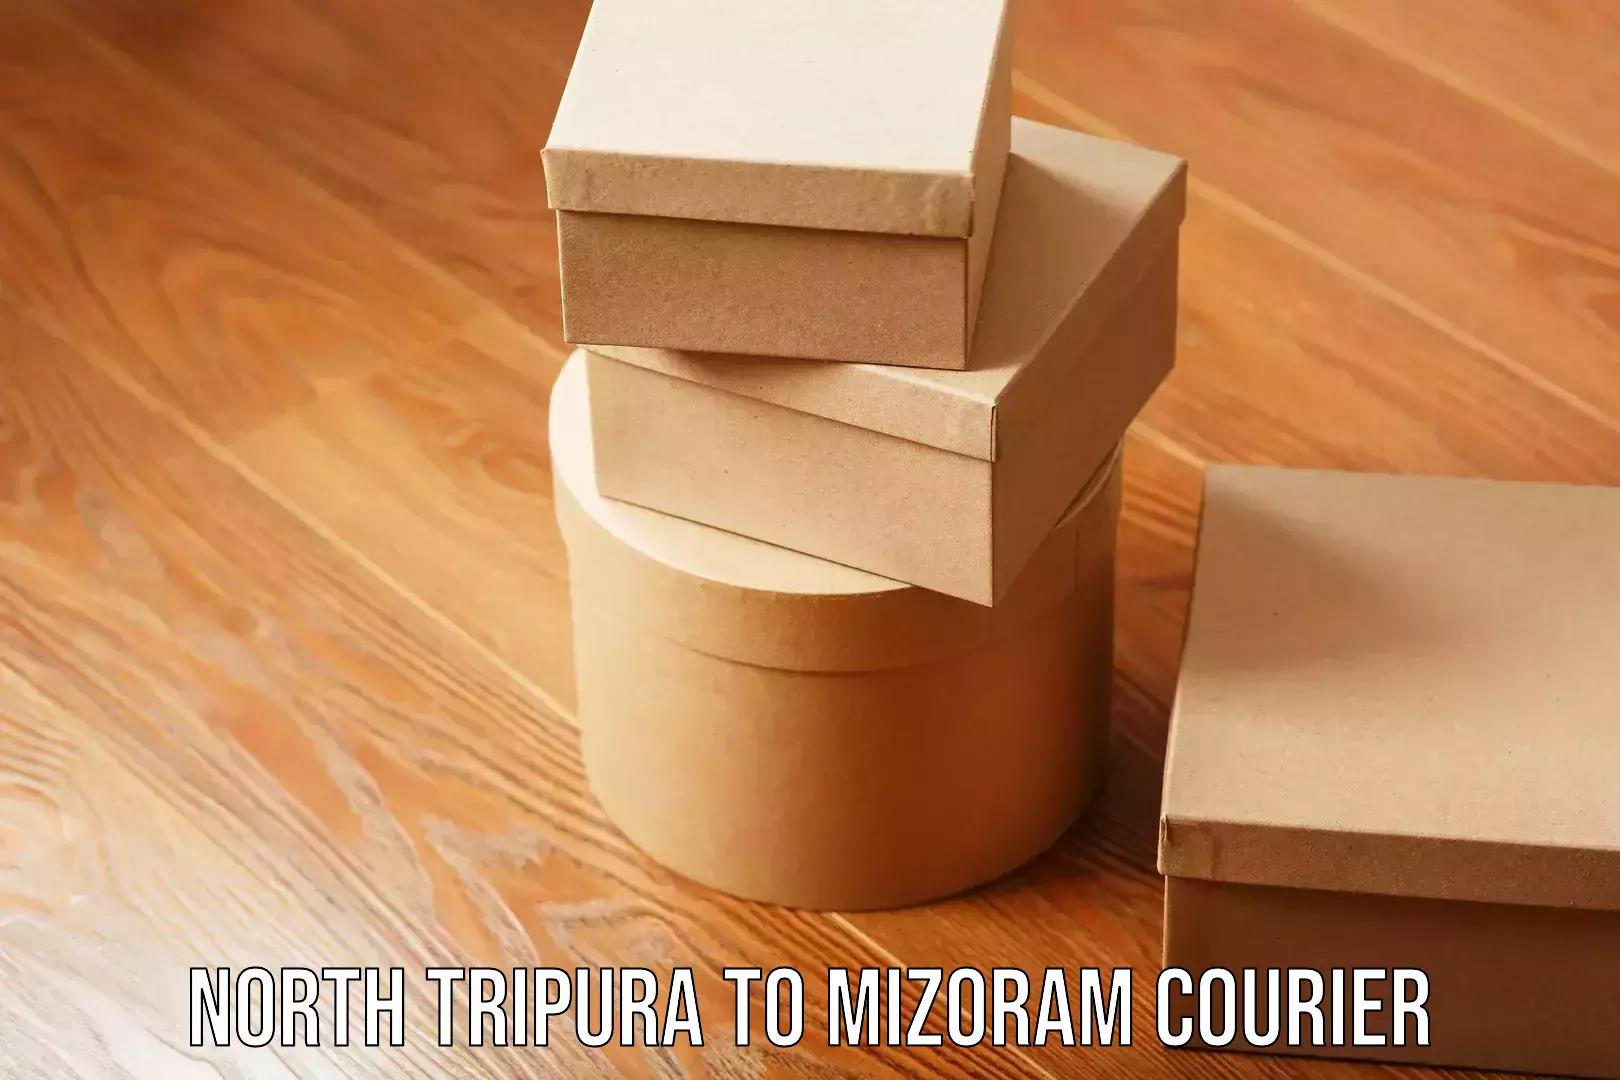 Efficient parcel transport North Tripura to Mizoram